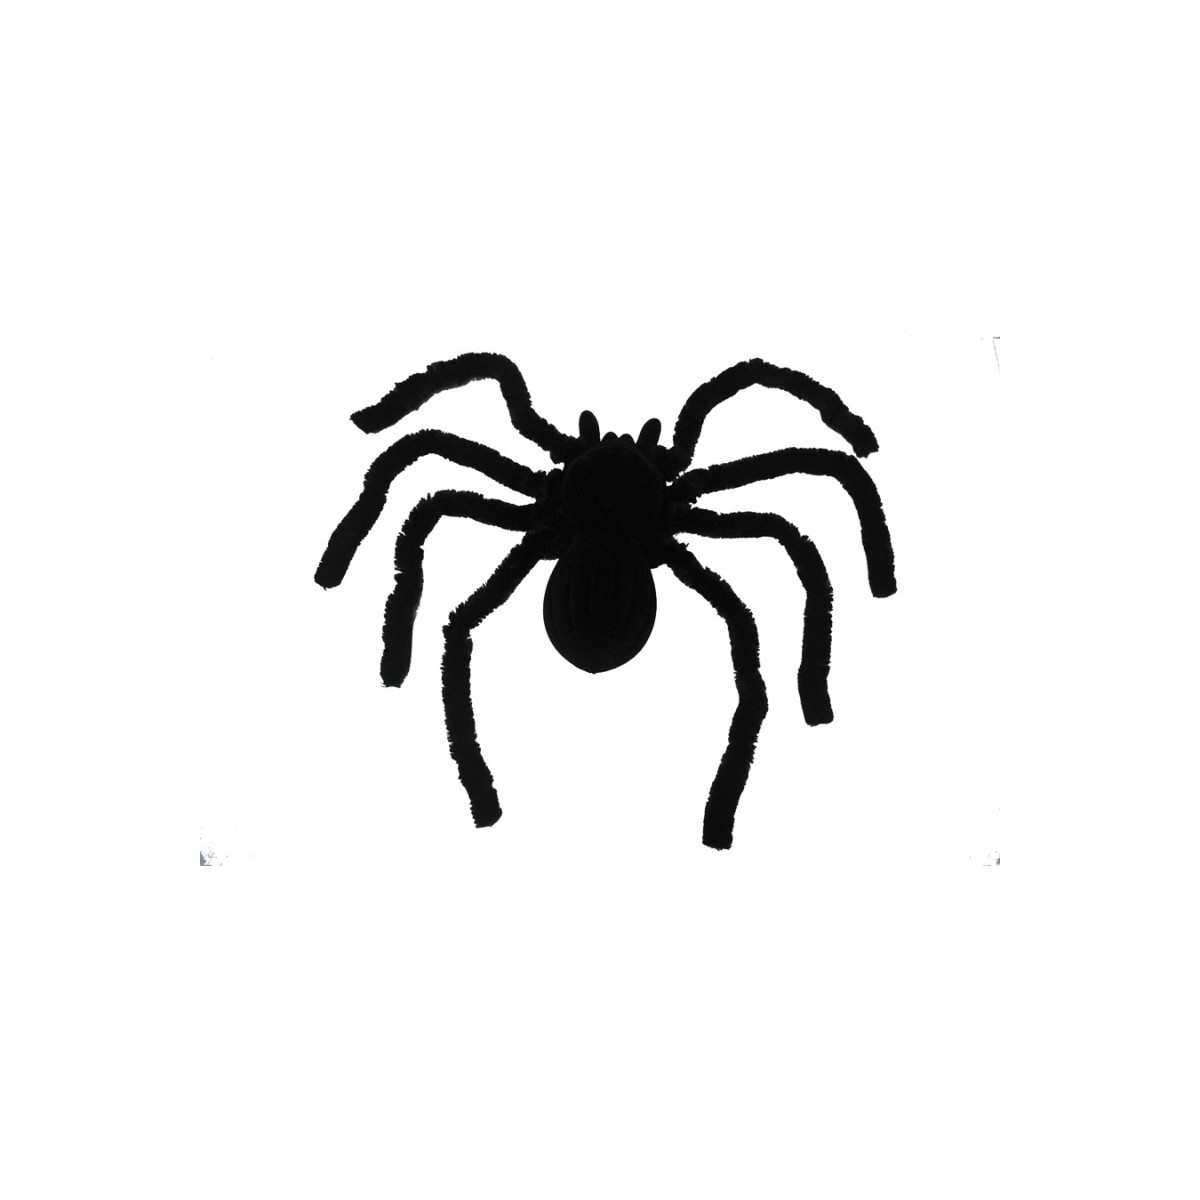 Araignée Mygale noire 46 cm